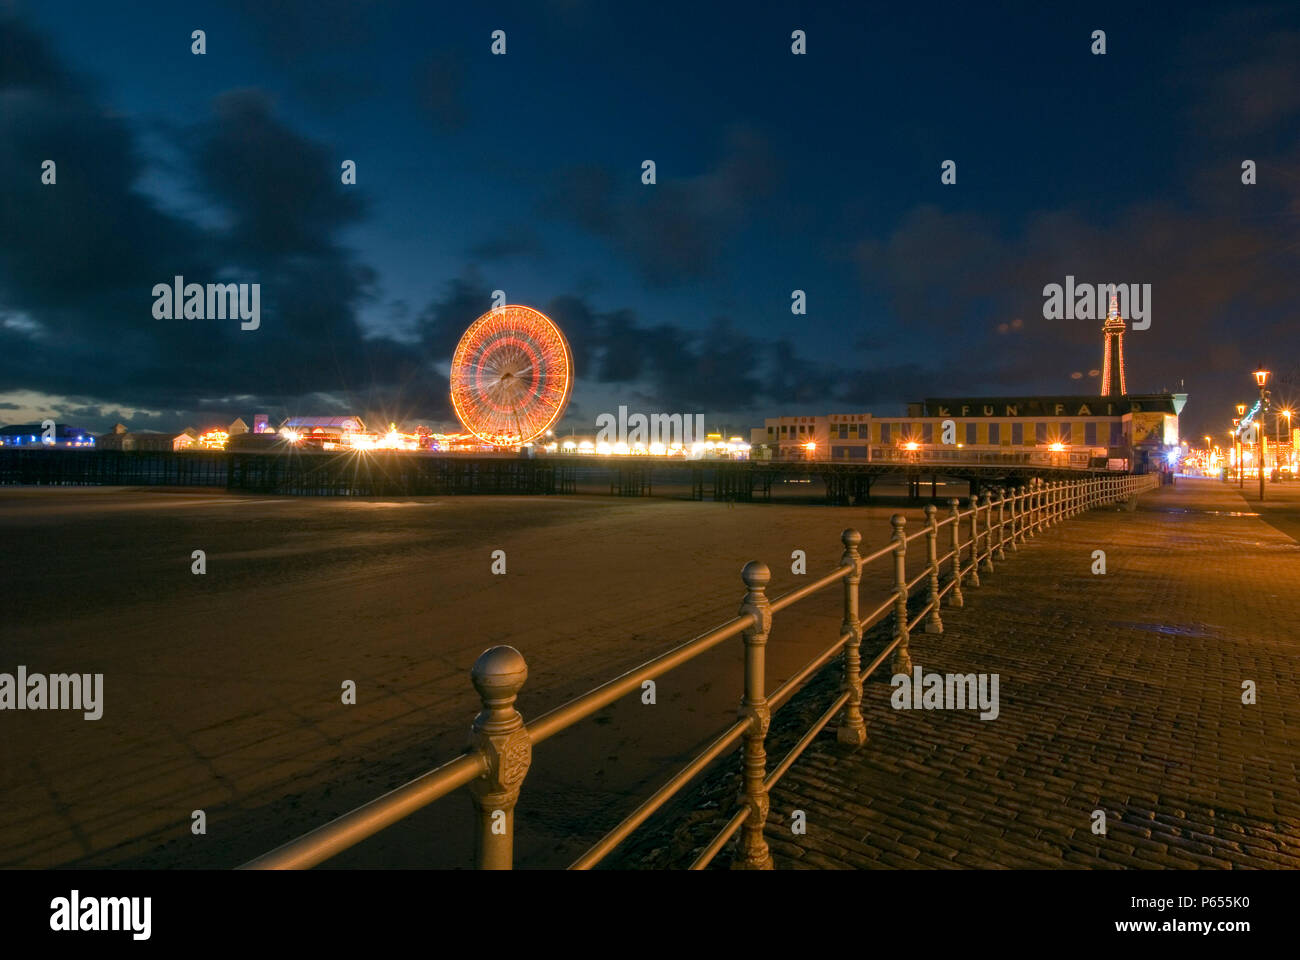 La promenade de Blackpool et de la Tour de nuit, Lancashire, UK Banque D'Images